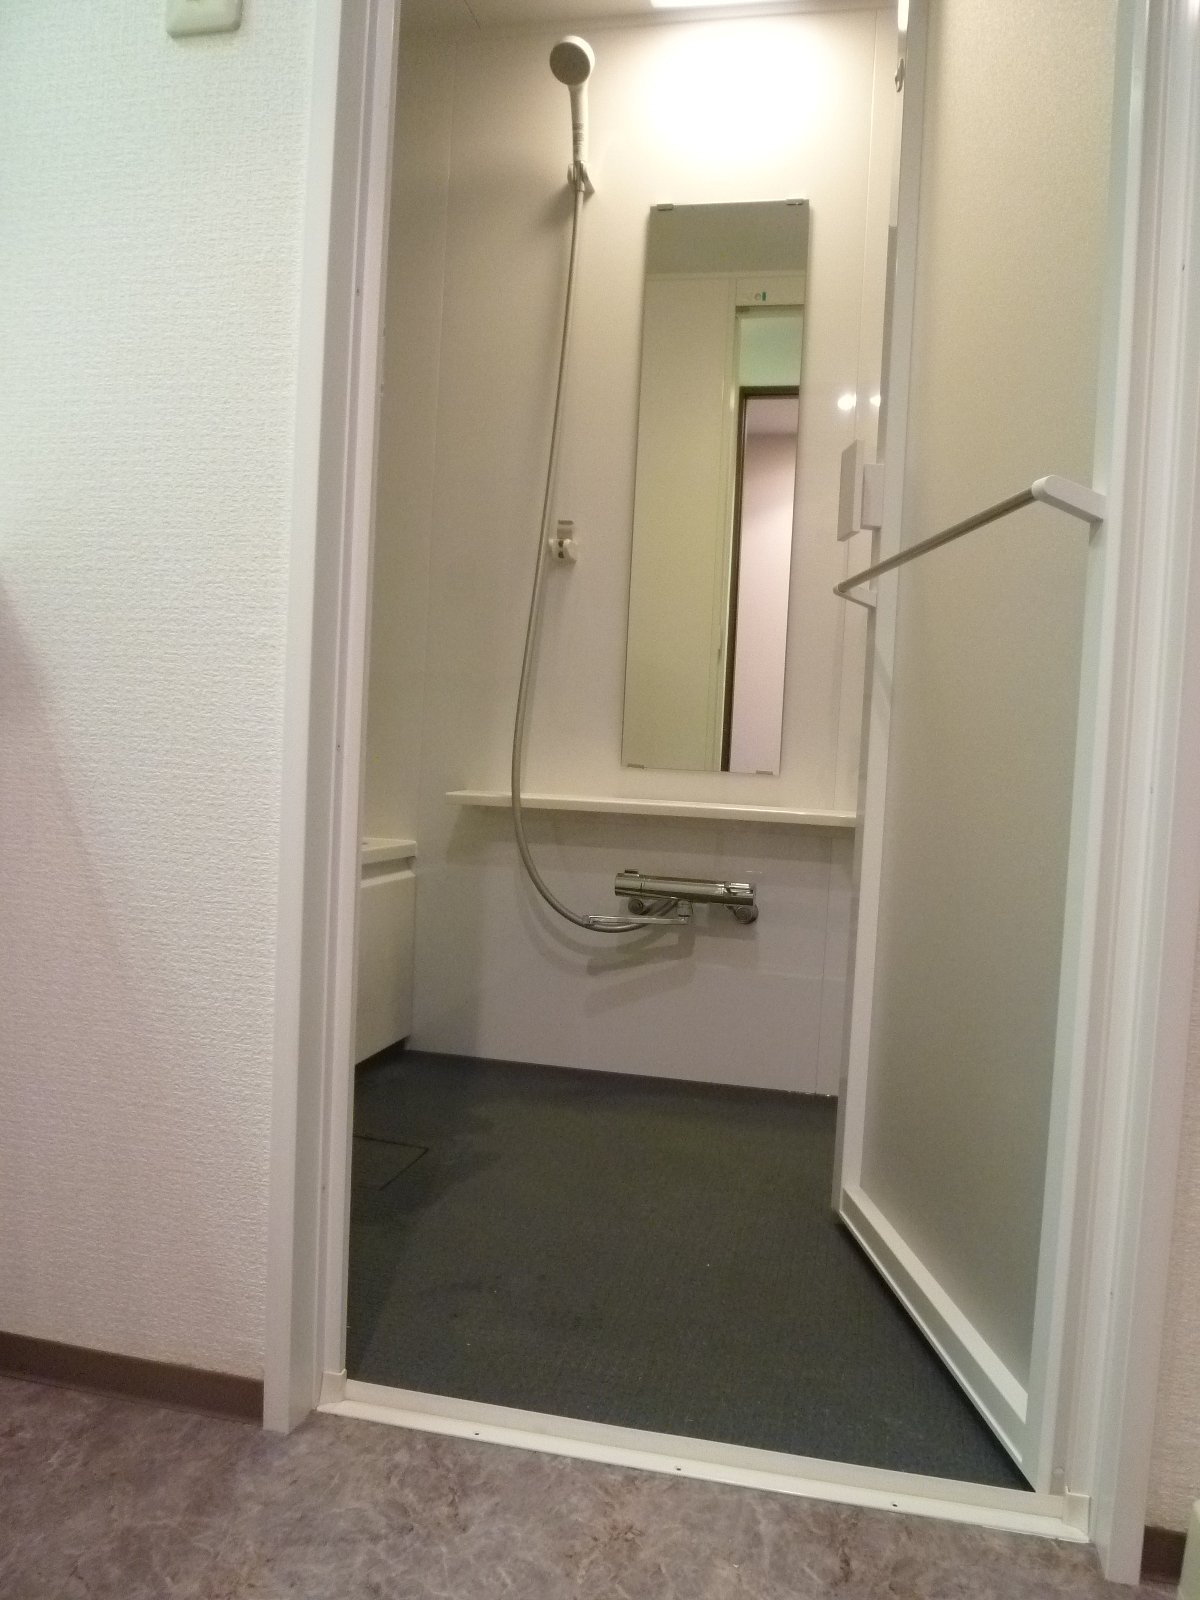 浴室入口<br />
扉は開き戸にして、ドアの外側にバスタオル掛けを付けました。<br />
